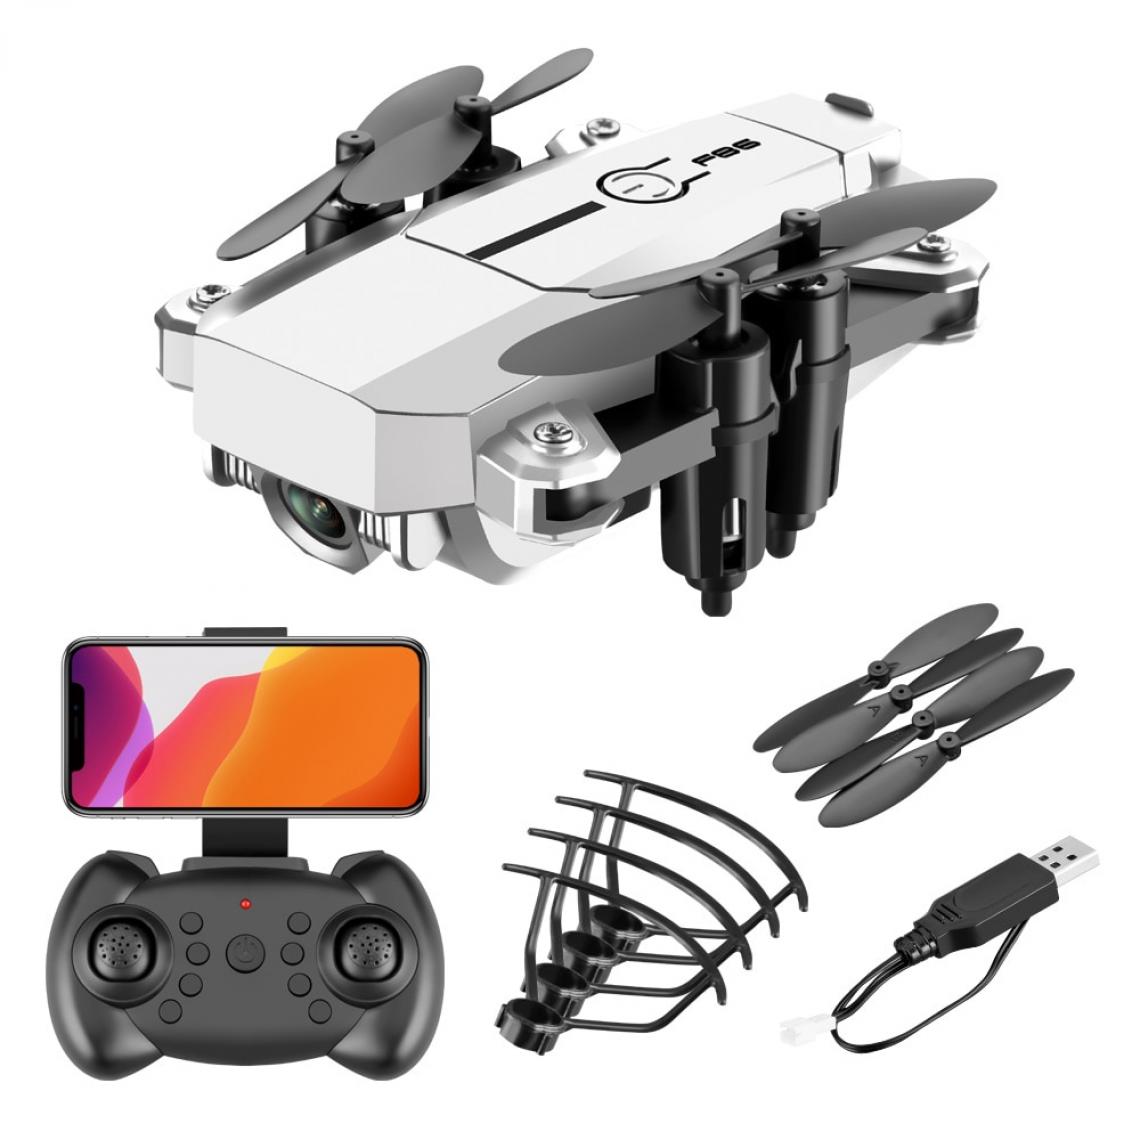 Universal - RC drone quadricoptère drone avec télécommande de caméra 4K professionnel HD WiFi quadricoptère hélicoptère une clé retour jouet | RC Helicopter(blanche) - Drone